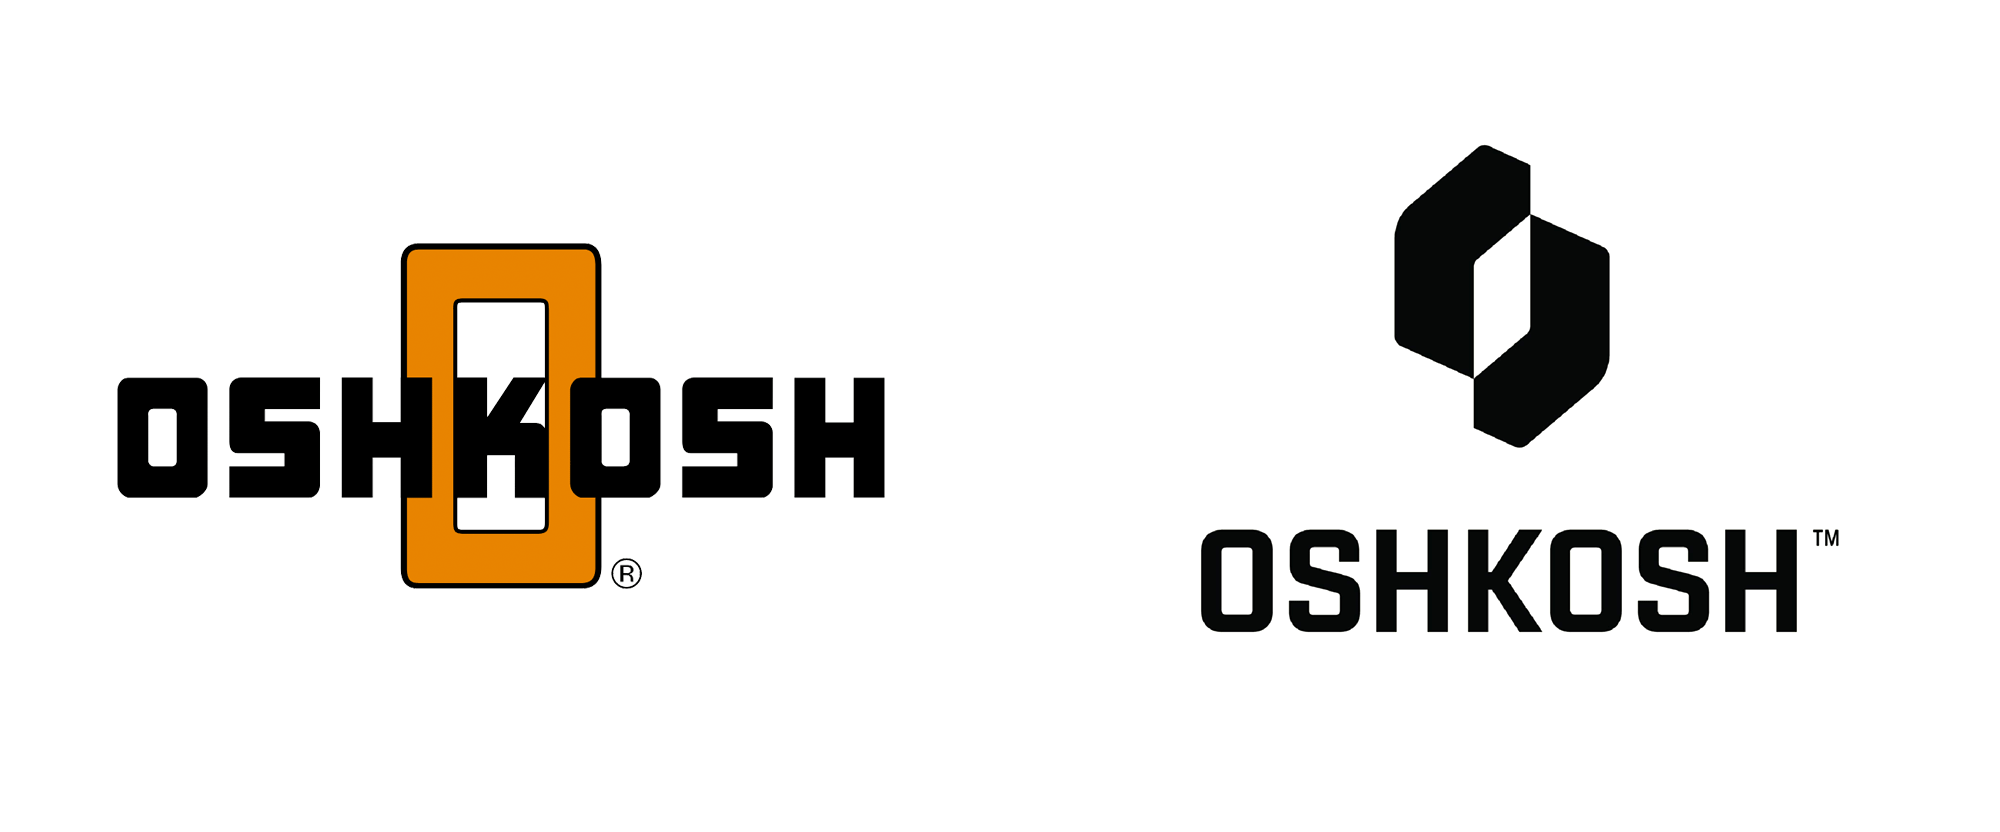 New Logo for Oshkosh Corporation